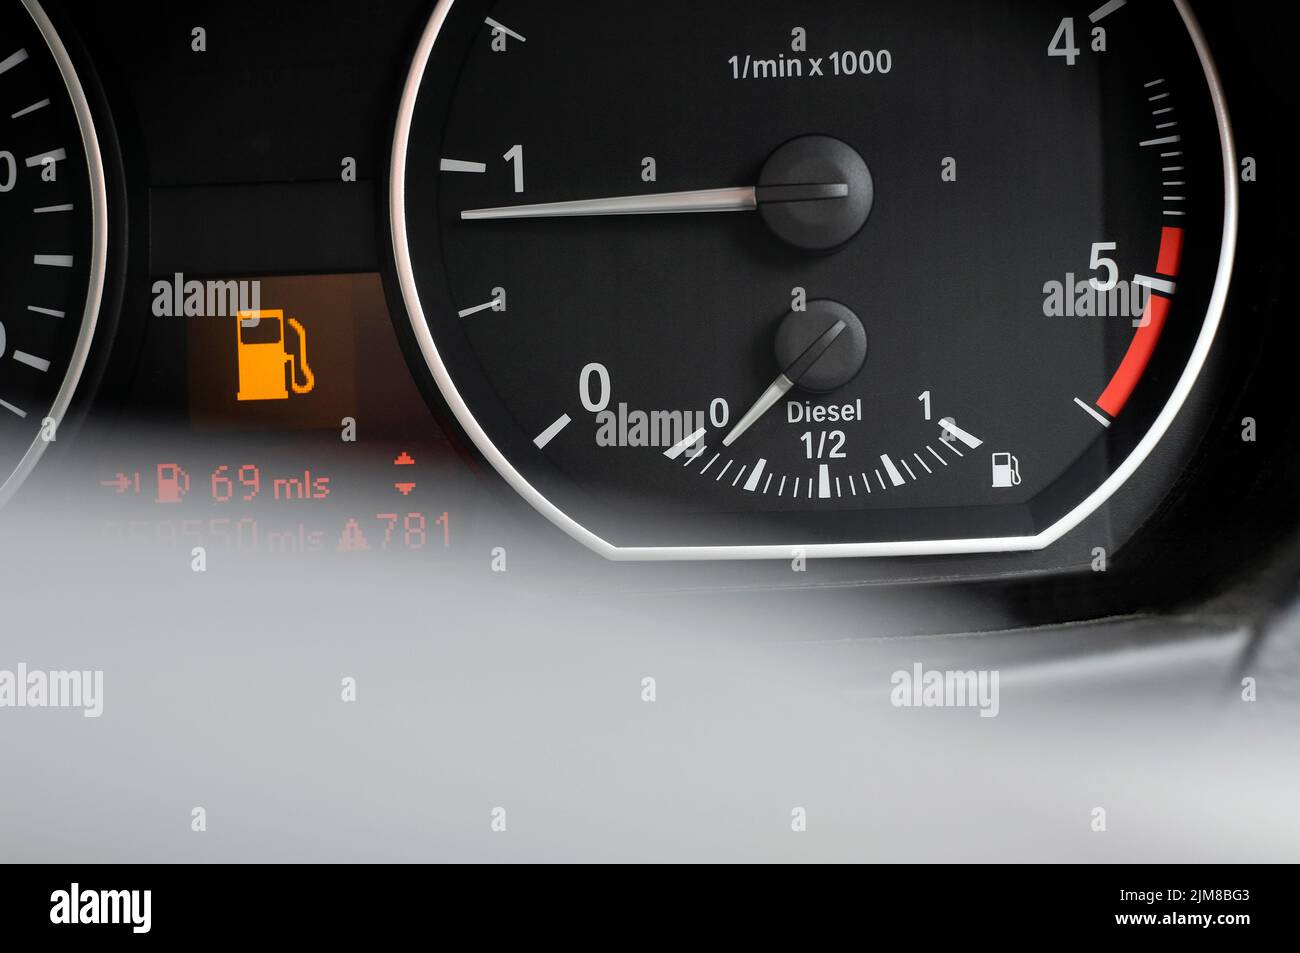 low on diesel fuel gauge in motor vehicle Stock Photo